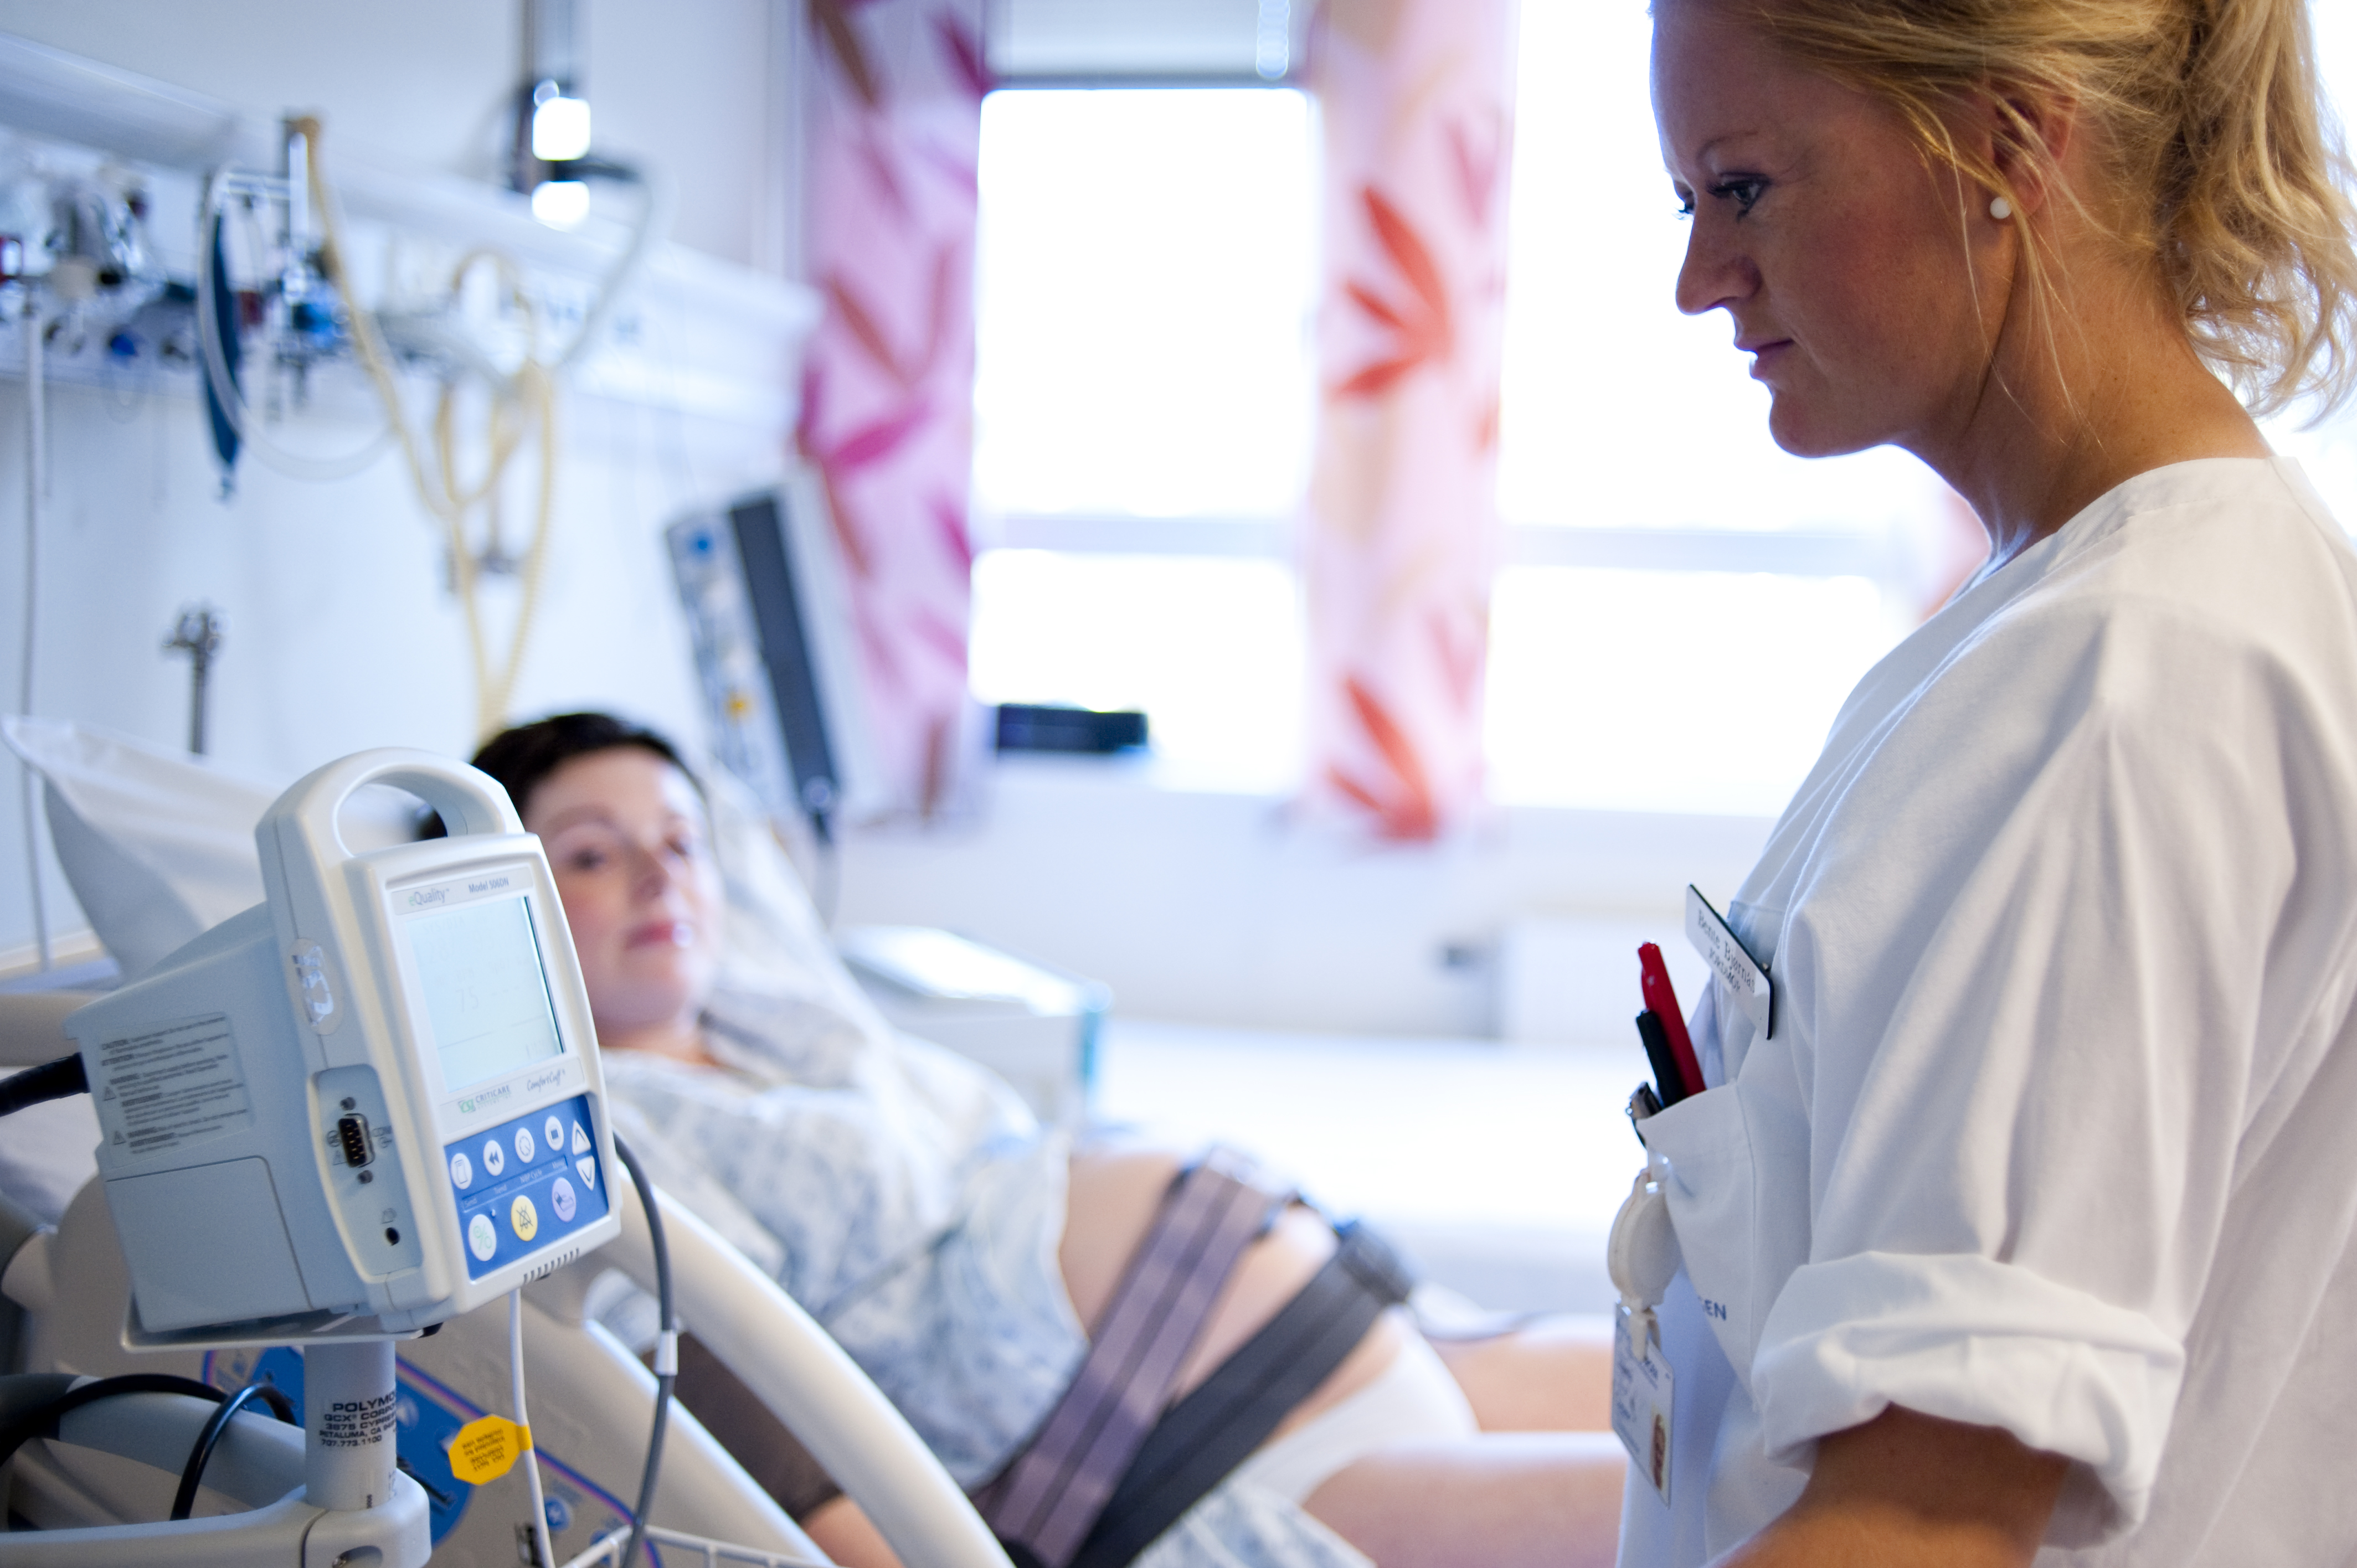 Gravid kvinne ligger i en sykehusseng med elastiske bånd med elektroder rundt magen, mens en sykepleier leser av resultatene på en CTG-maskin (cardiotokografi) som måler barnets hjerteslag.